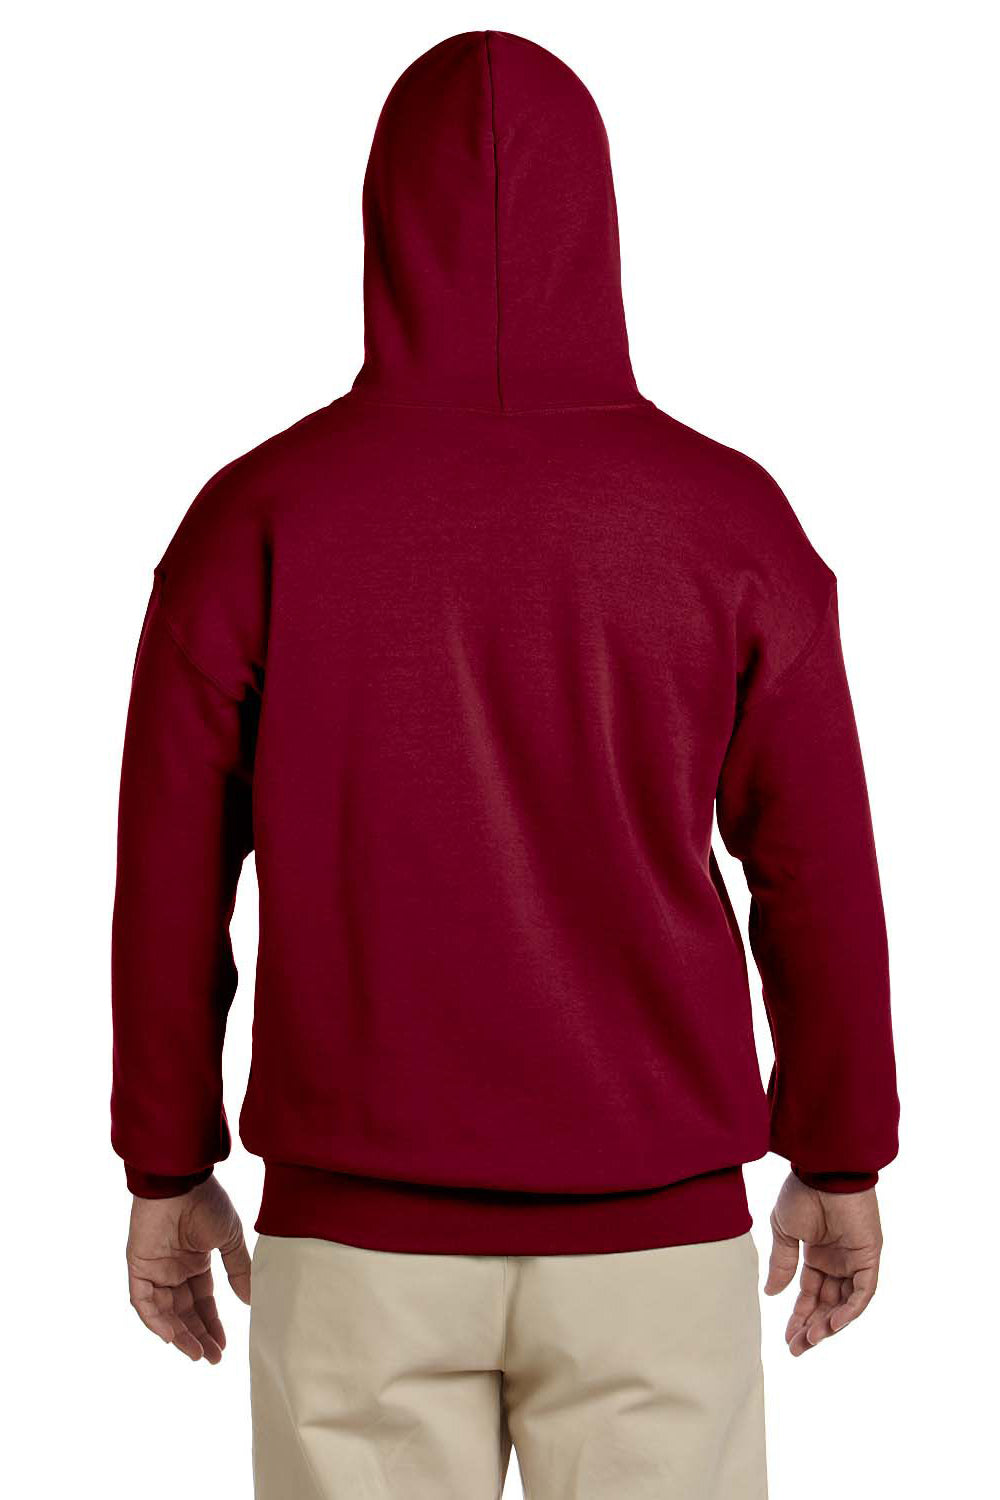 Gildan G185 Mens Hooded Sweatshirt Hoodie Antique Cherry Red Back